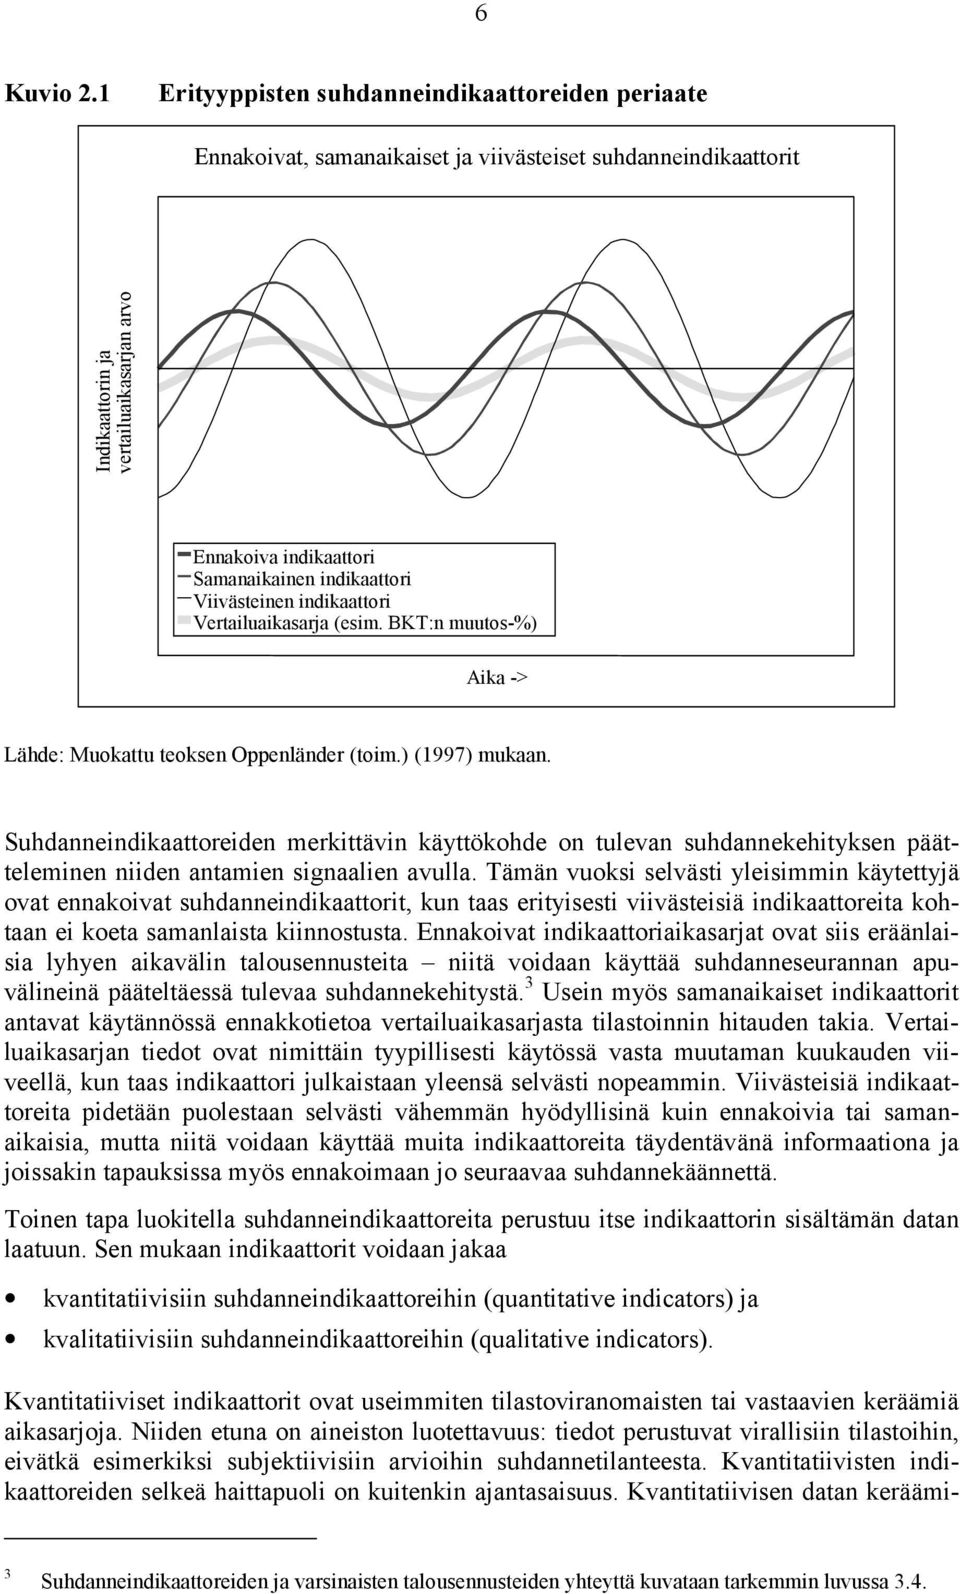 indikaattori Viivästeinen indikaattori Vertailuaikasarja (esim. BKT:n muutos-%) Aika -> Lähde: Muokattu teoksen Oppenländer (toim.) (1997) mukaan.